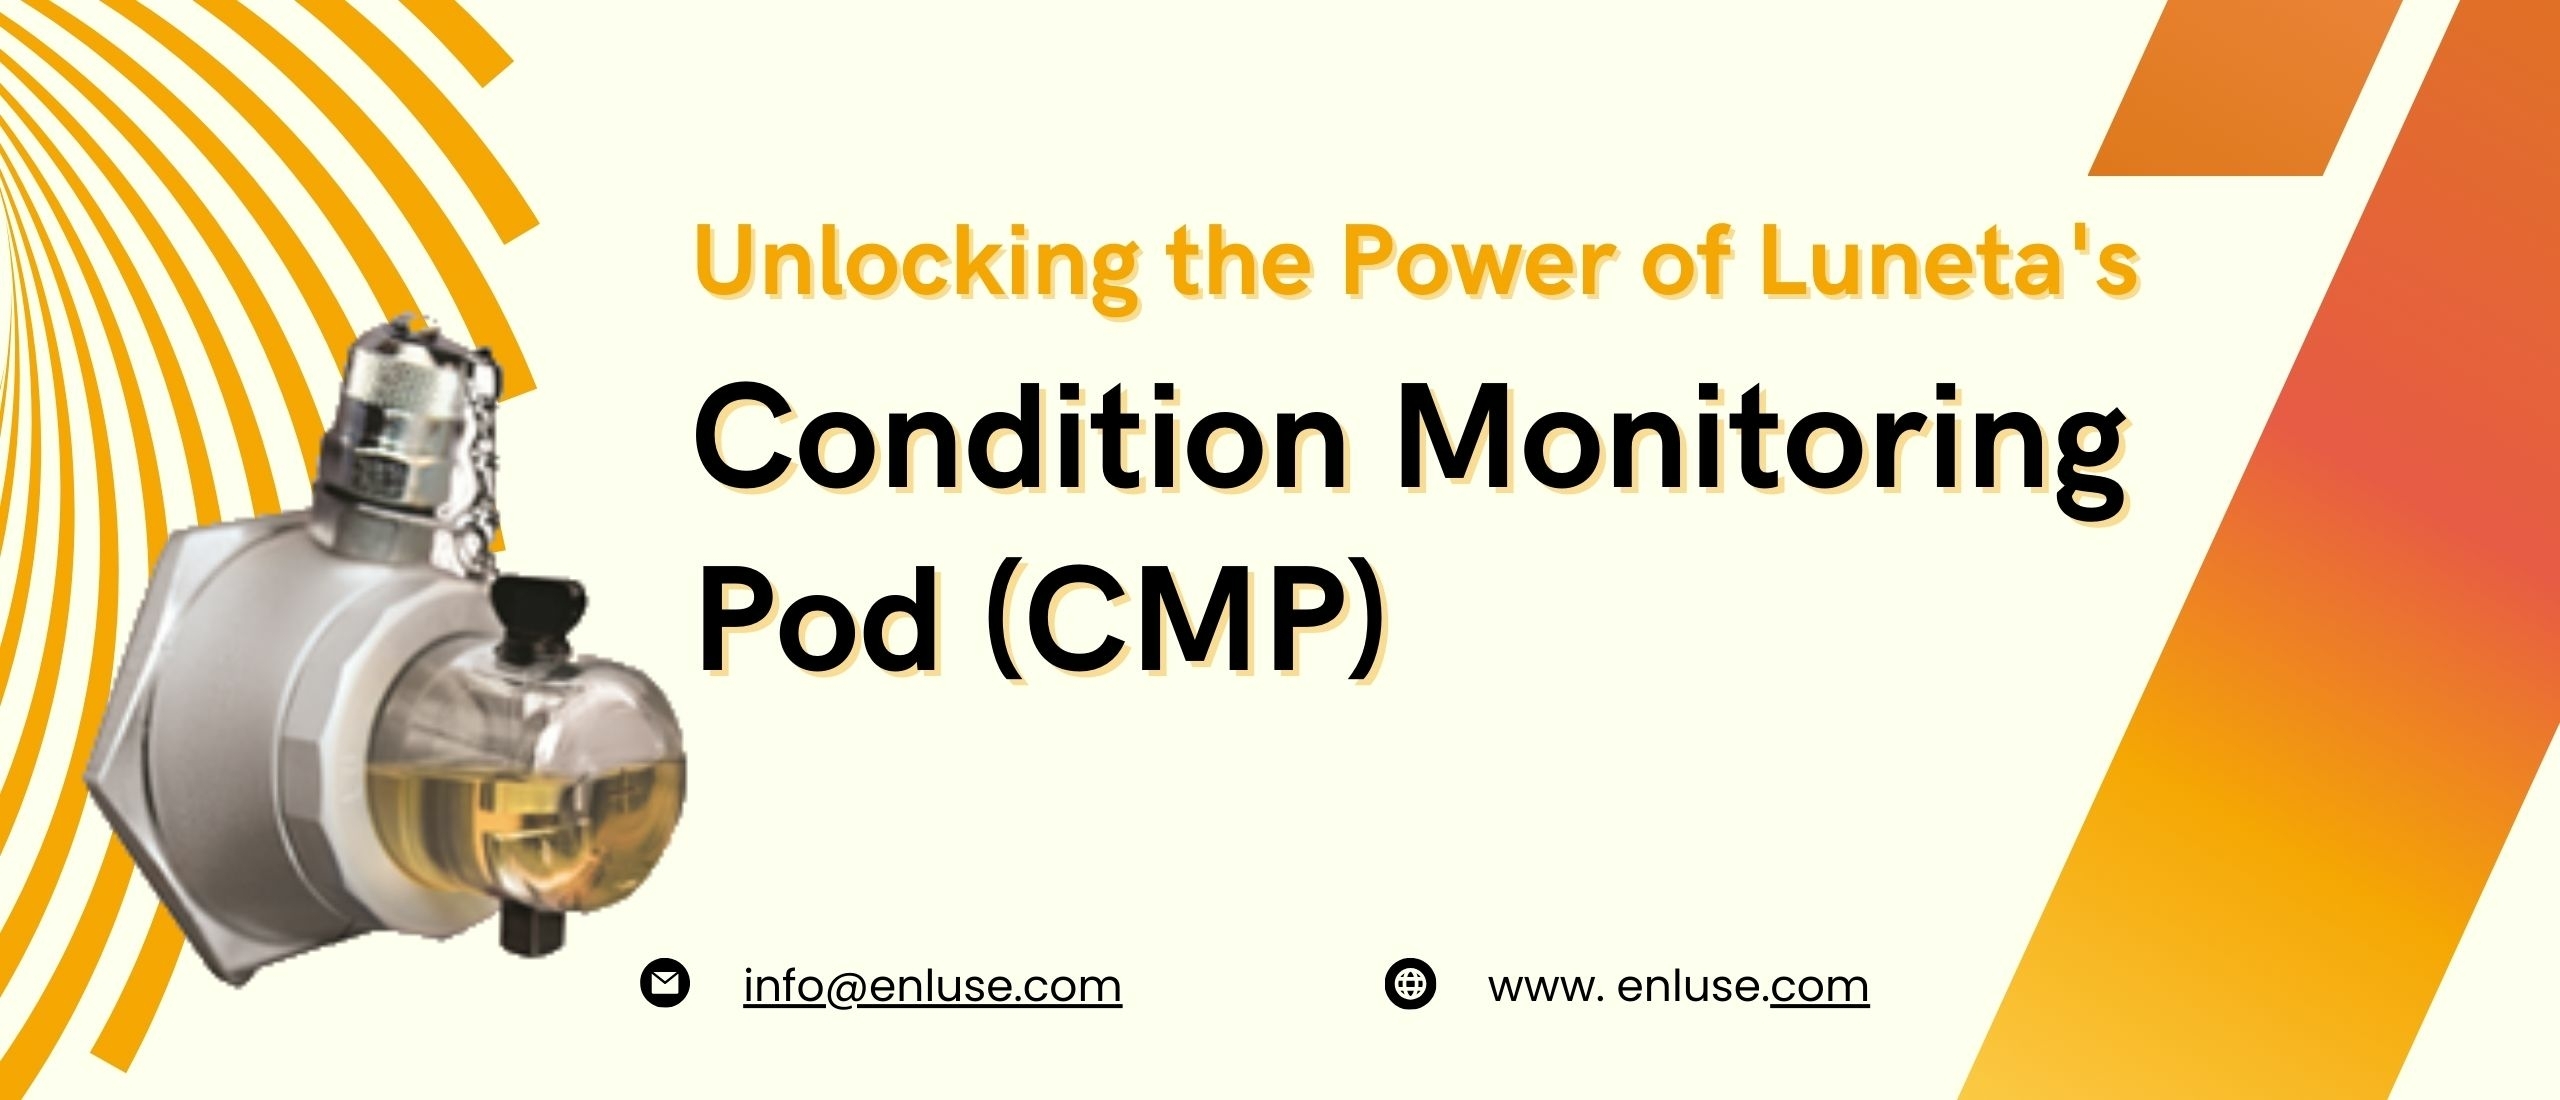 Condition Monitoring Pod (CMP)